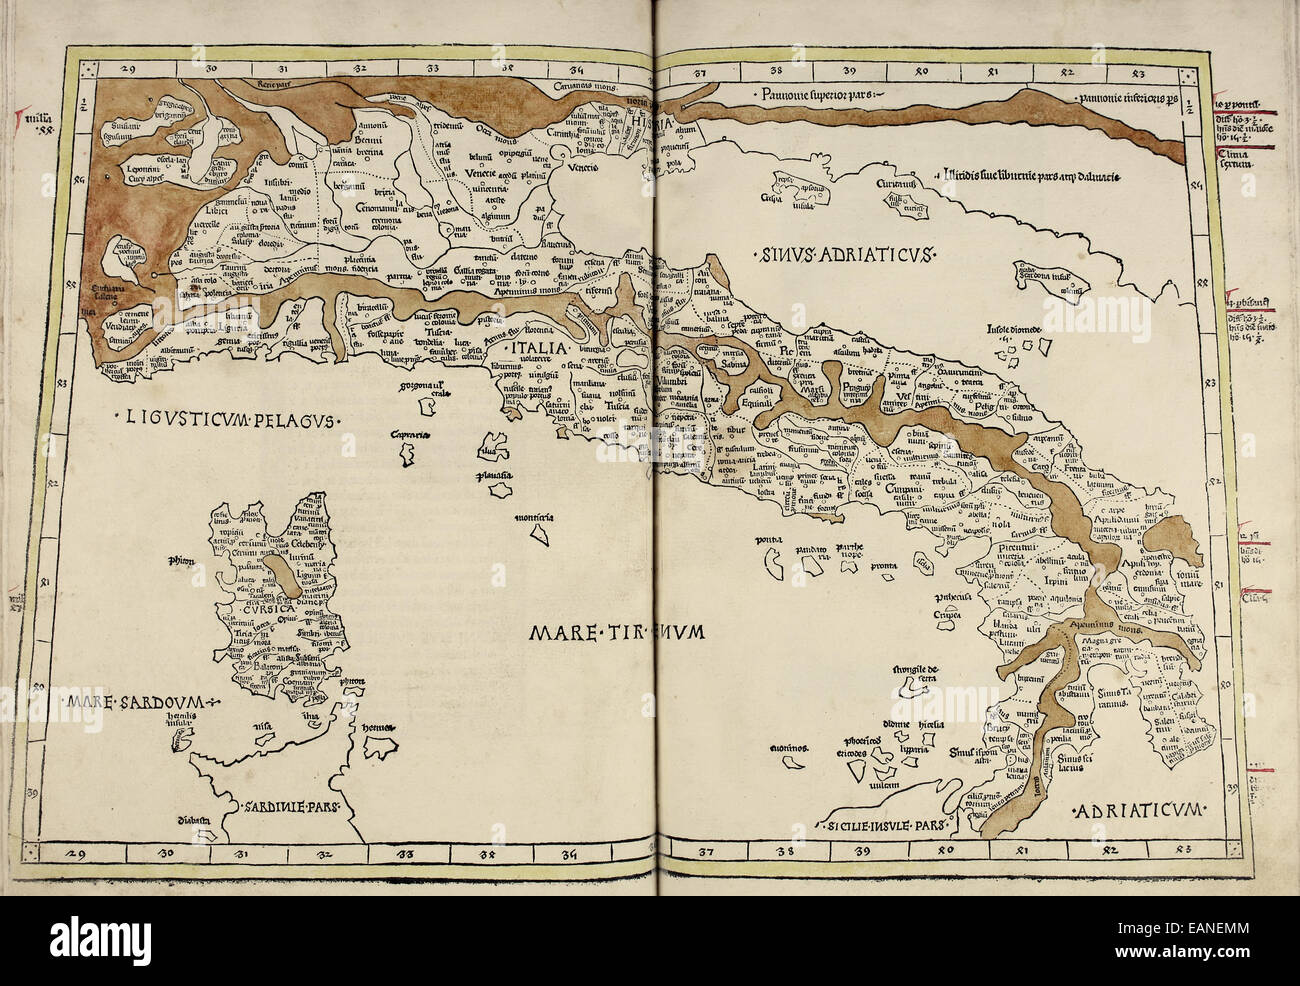 Karte von Italien & Korsika von "Cosmographia" von Claudius Ptolemäus (Ptolemaeus) (90-168AD). Siehe Beschreibung für mehr Informationen. Stockfoto